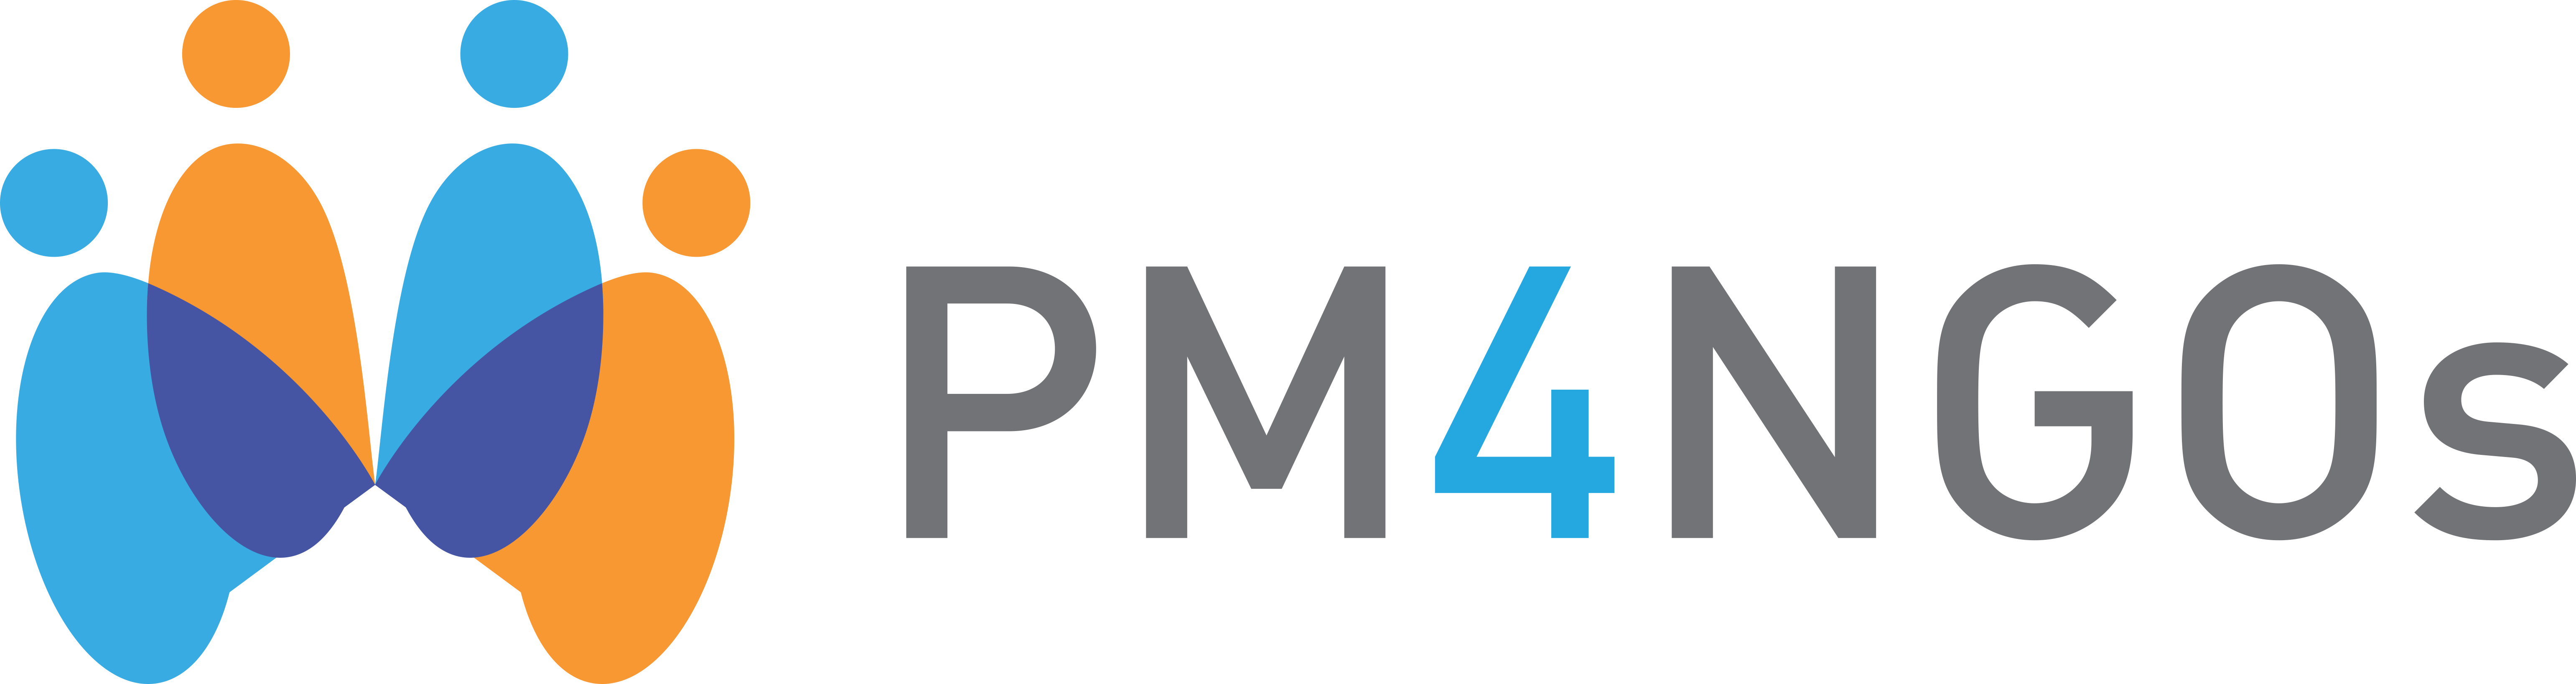 PM4NGOs Logo